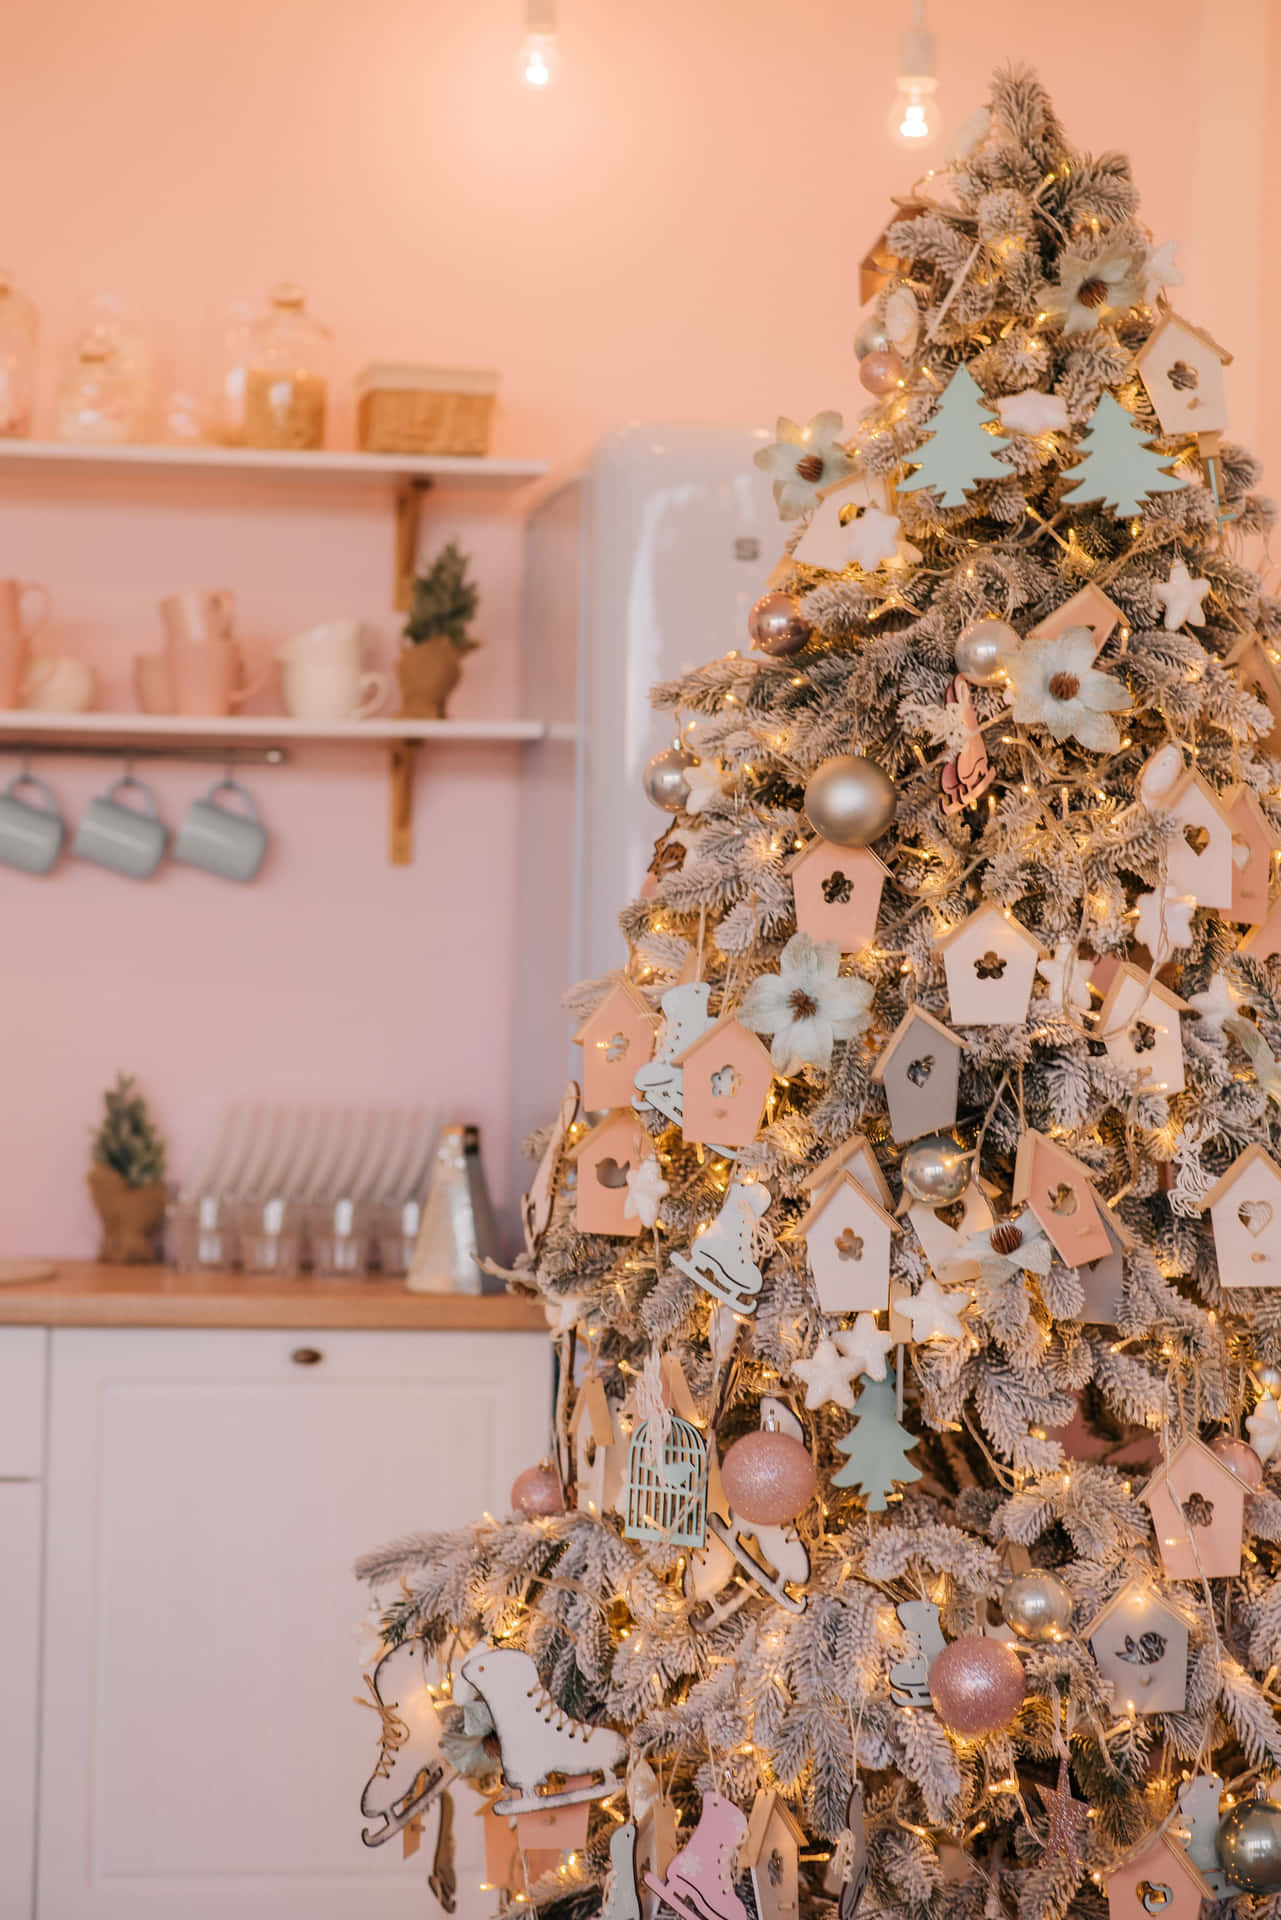 Eingemütlicher Ästhetischer Weihnachtsbaum Geschmückt Mit Ornamenten, Zuckerstangen Und Rustikalen Dekorationen. Wallpaper